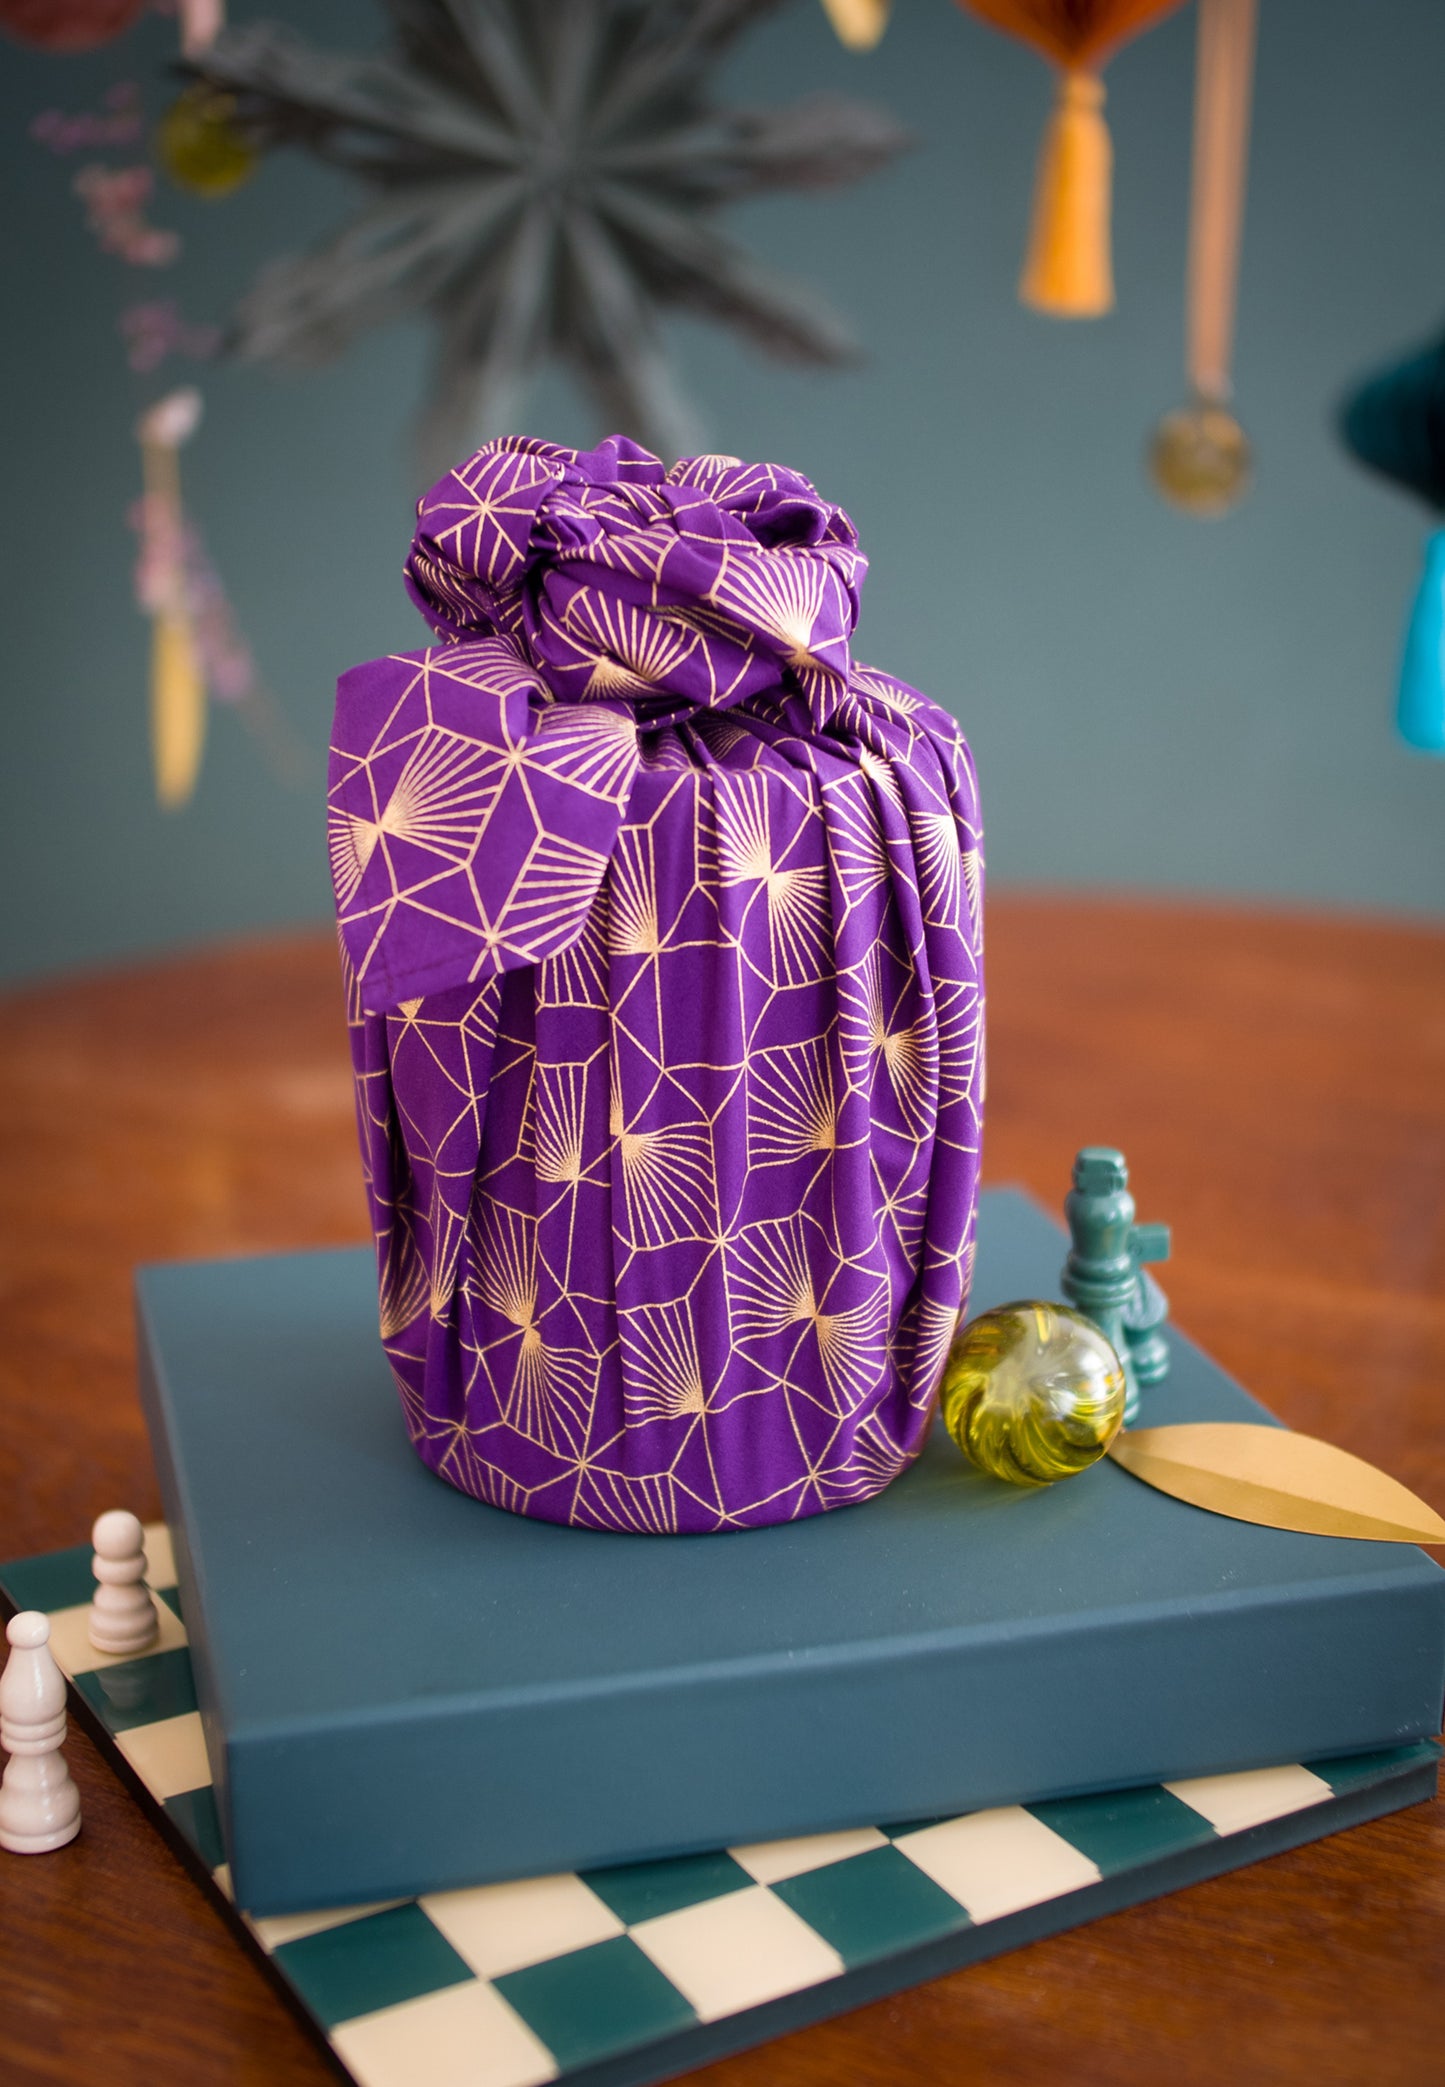 Fabric Gift Wrap Furoshiki - Christmas Gold Set